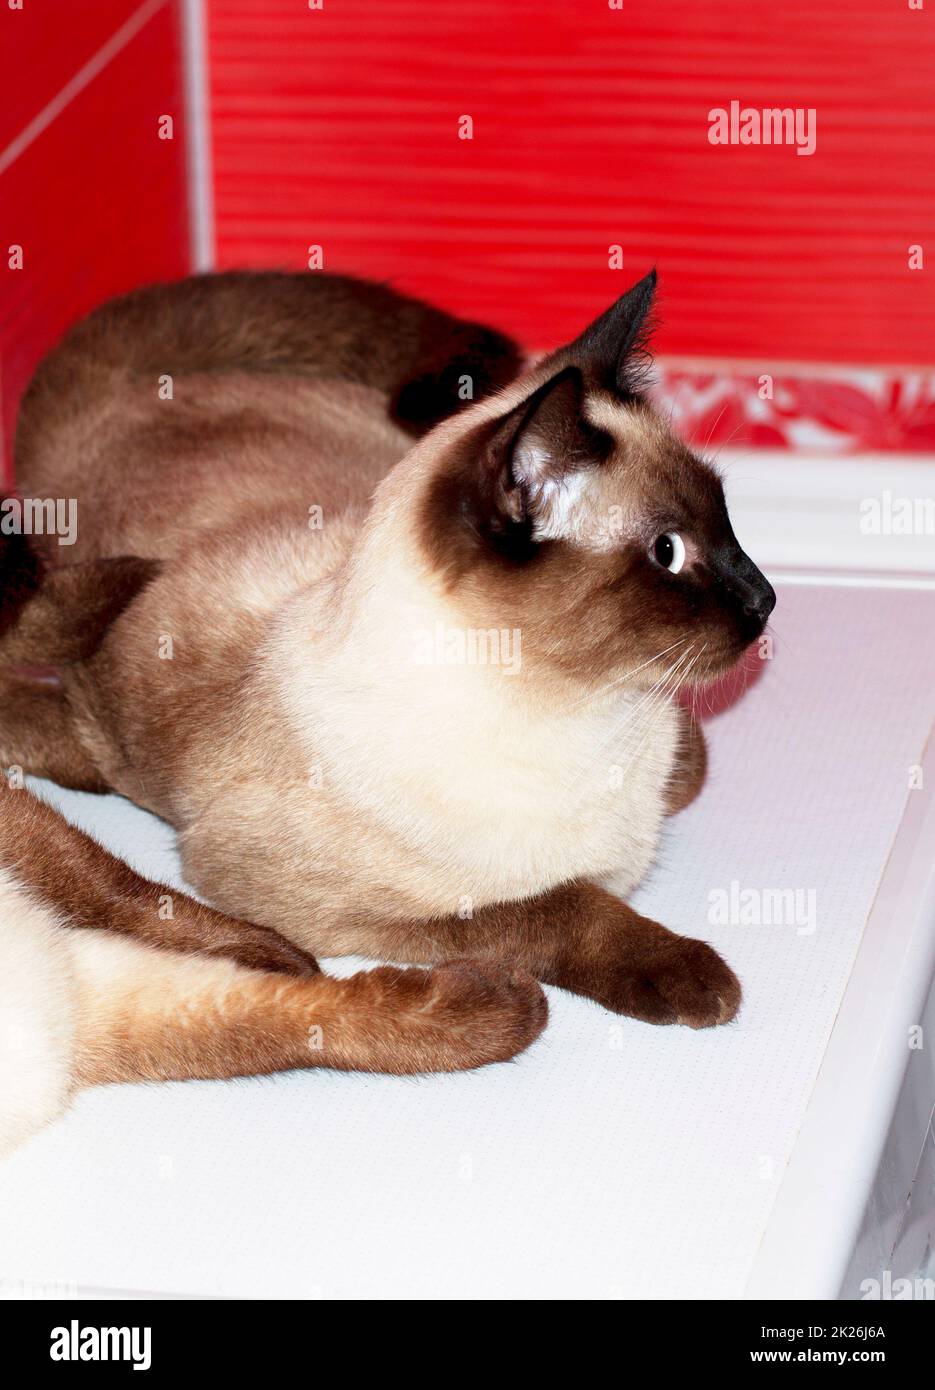 Bellissimo gatto siamese si trova in un bagno rosso Foto Stock